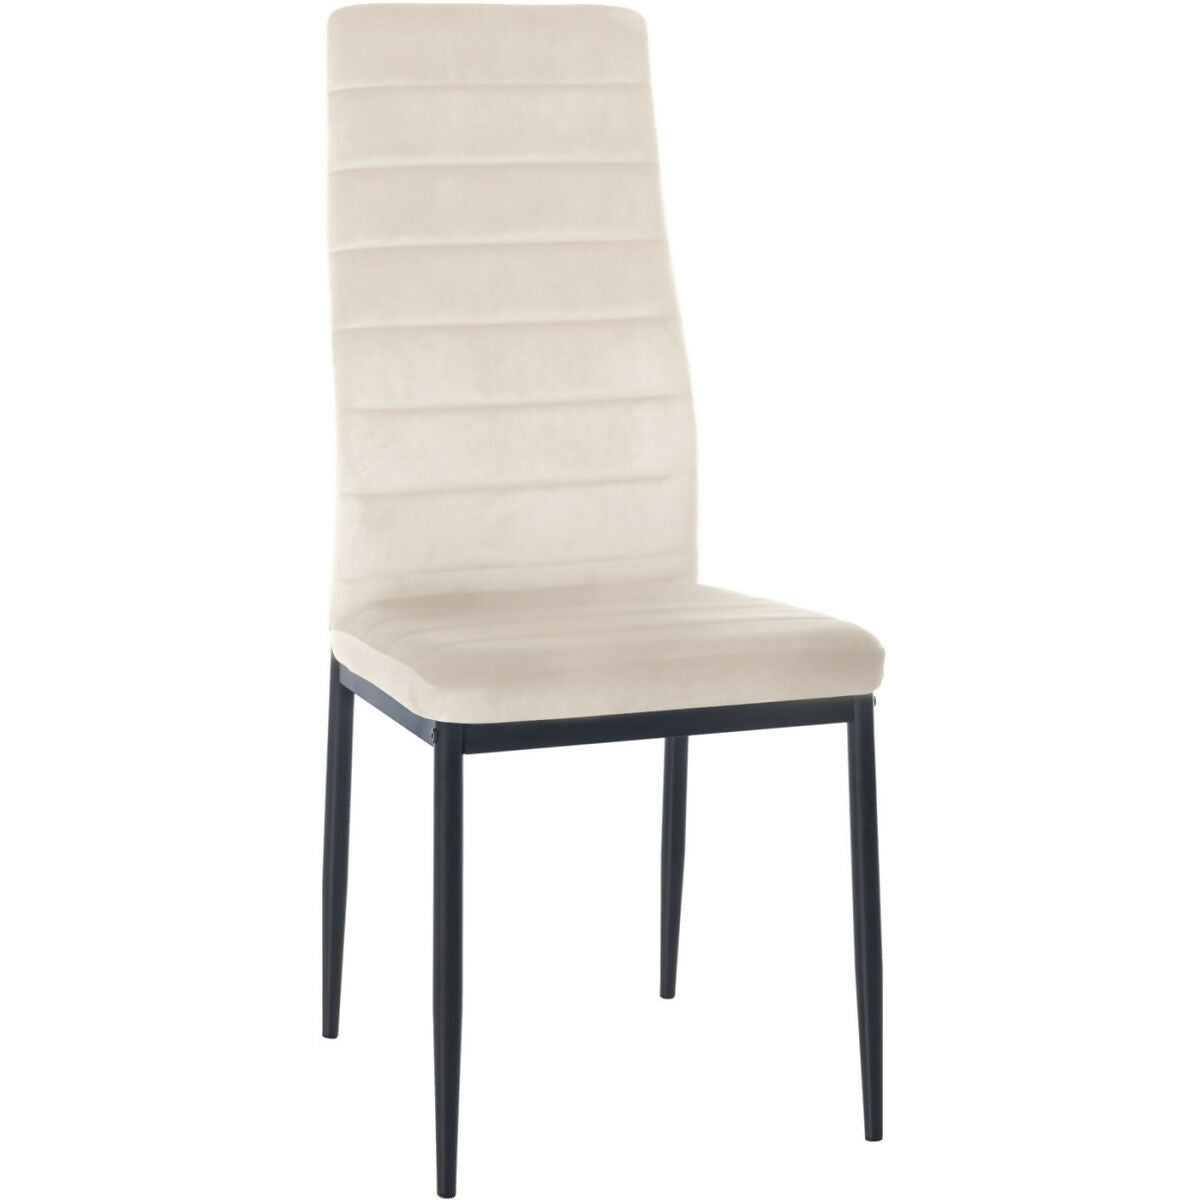 Mayfair Velvet Chair - cream - 0